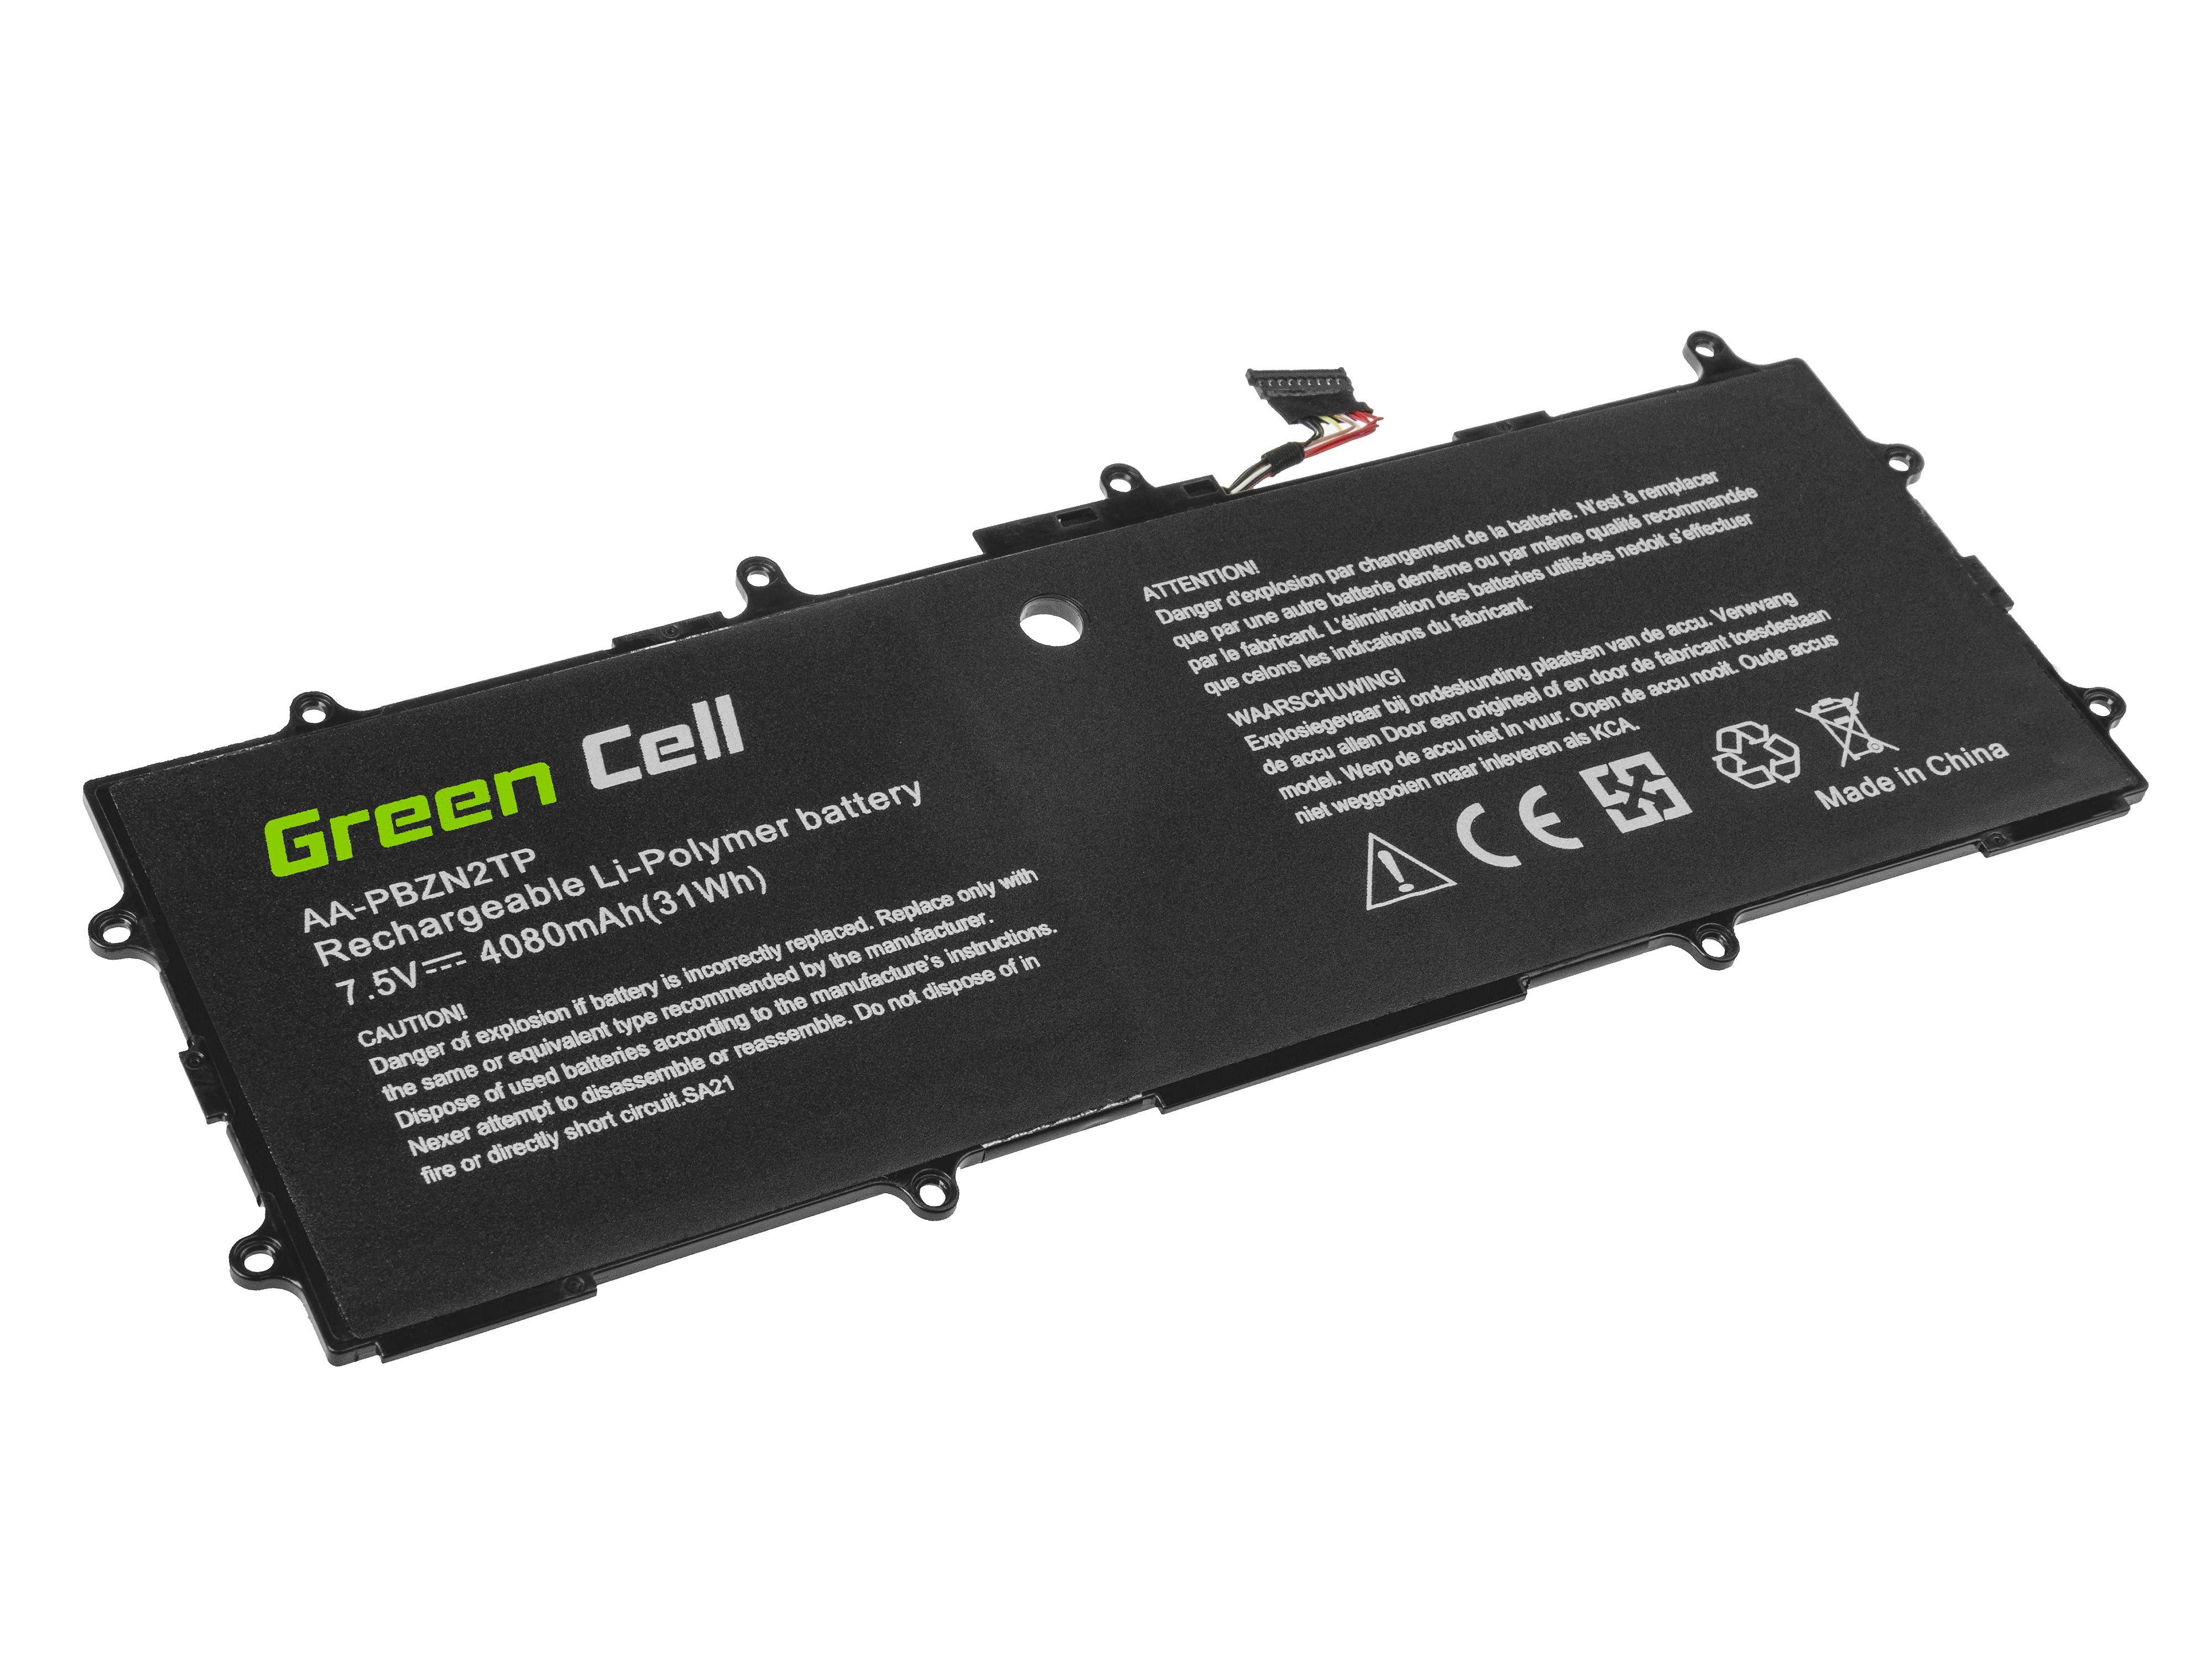 Batterij AA-PBZN2TP Voor Samsung NP905S3G NP910S3G NP915S3G XE300TZC XE303C12 XE500C12 XE500T1C